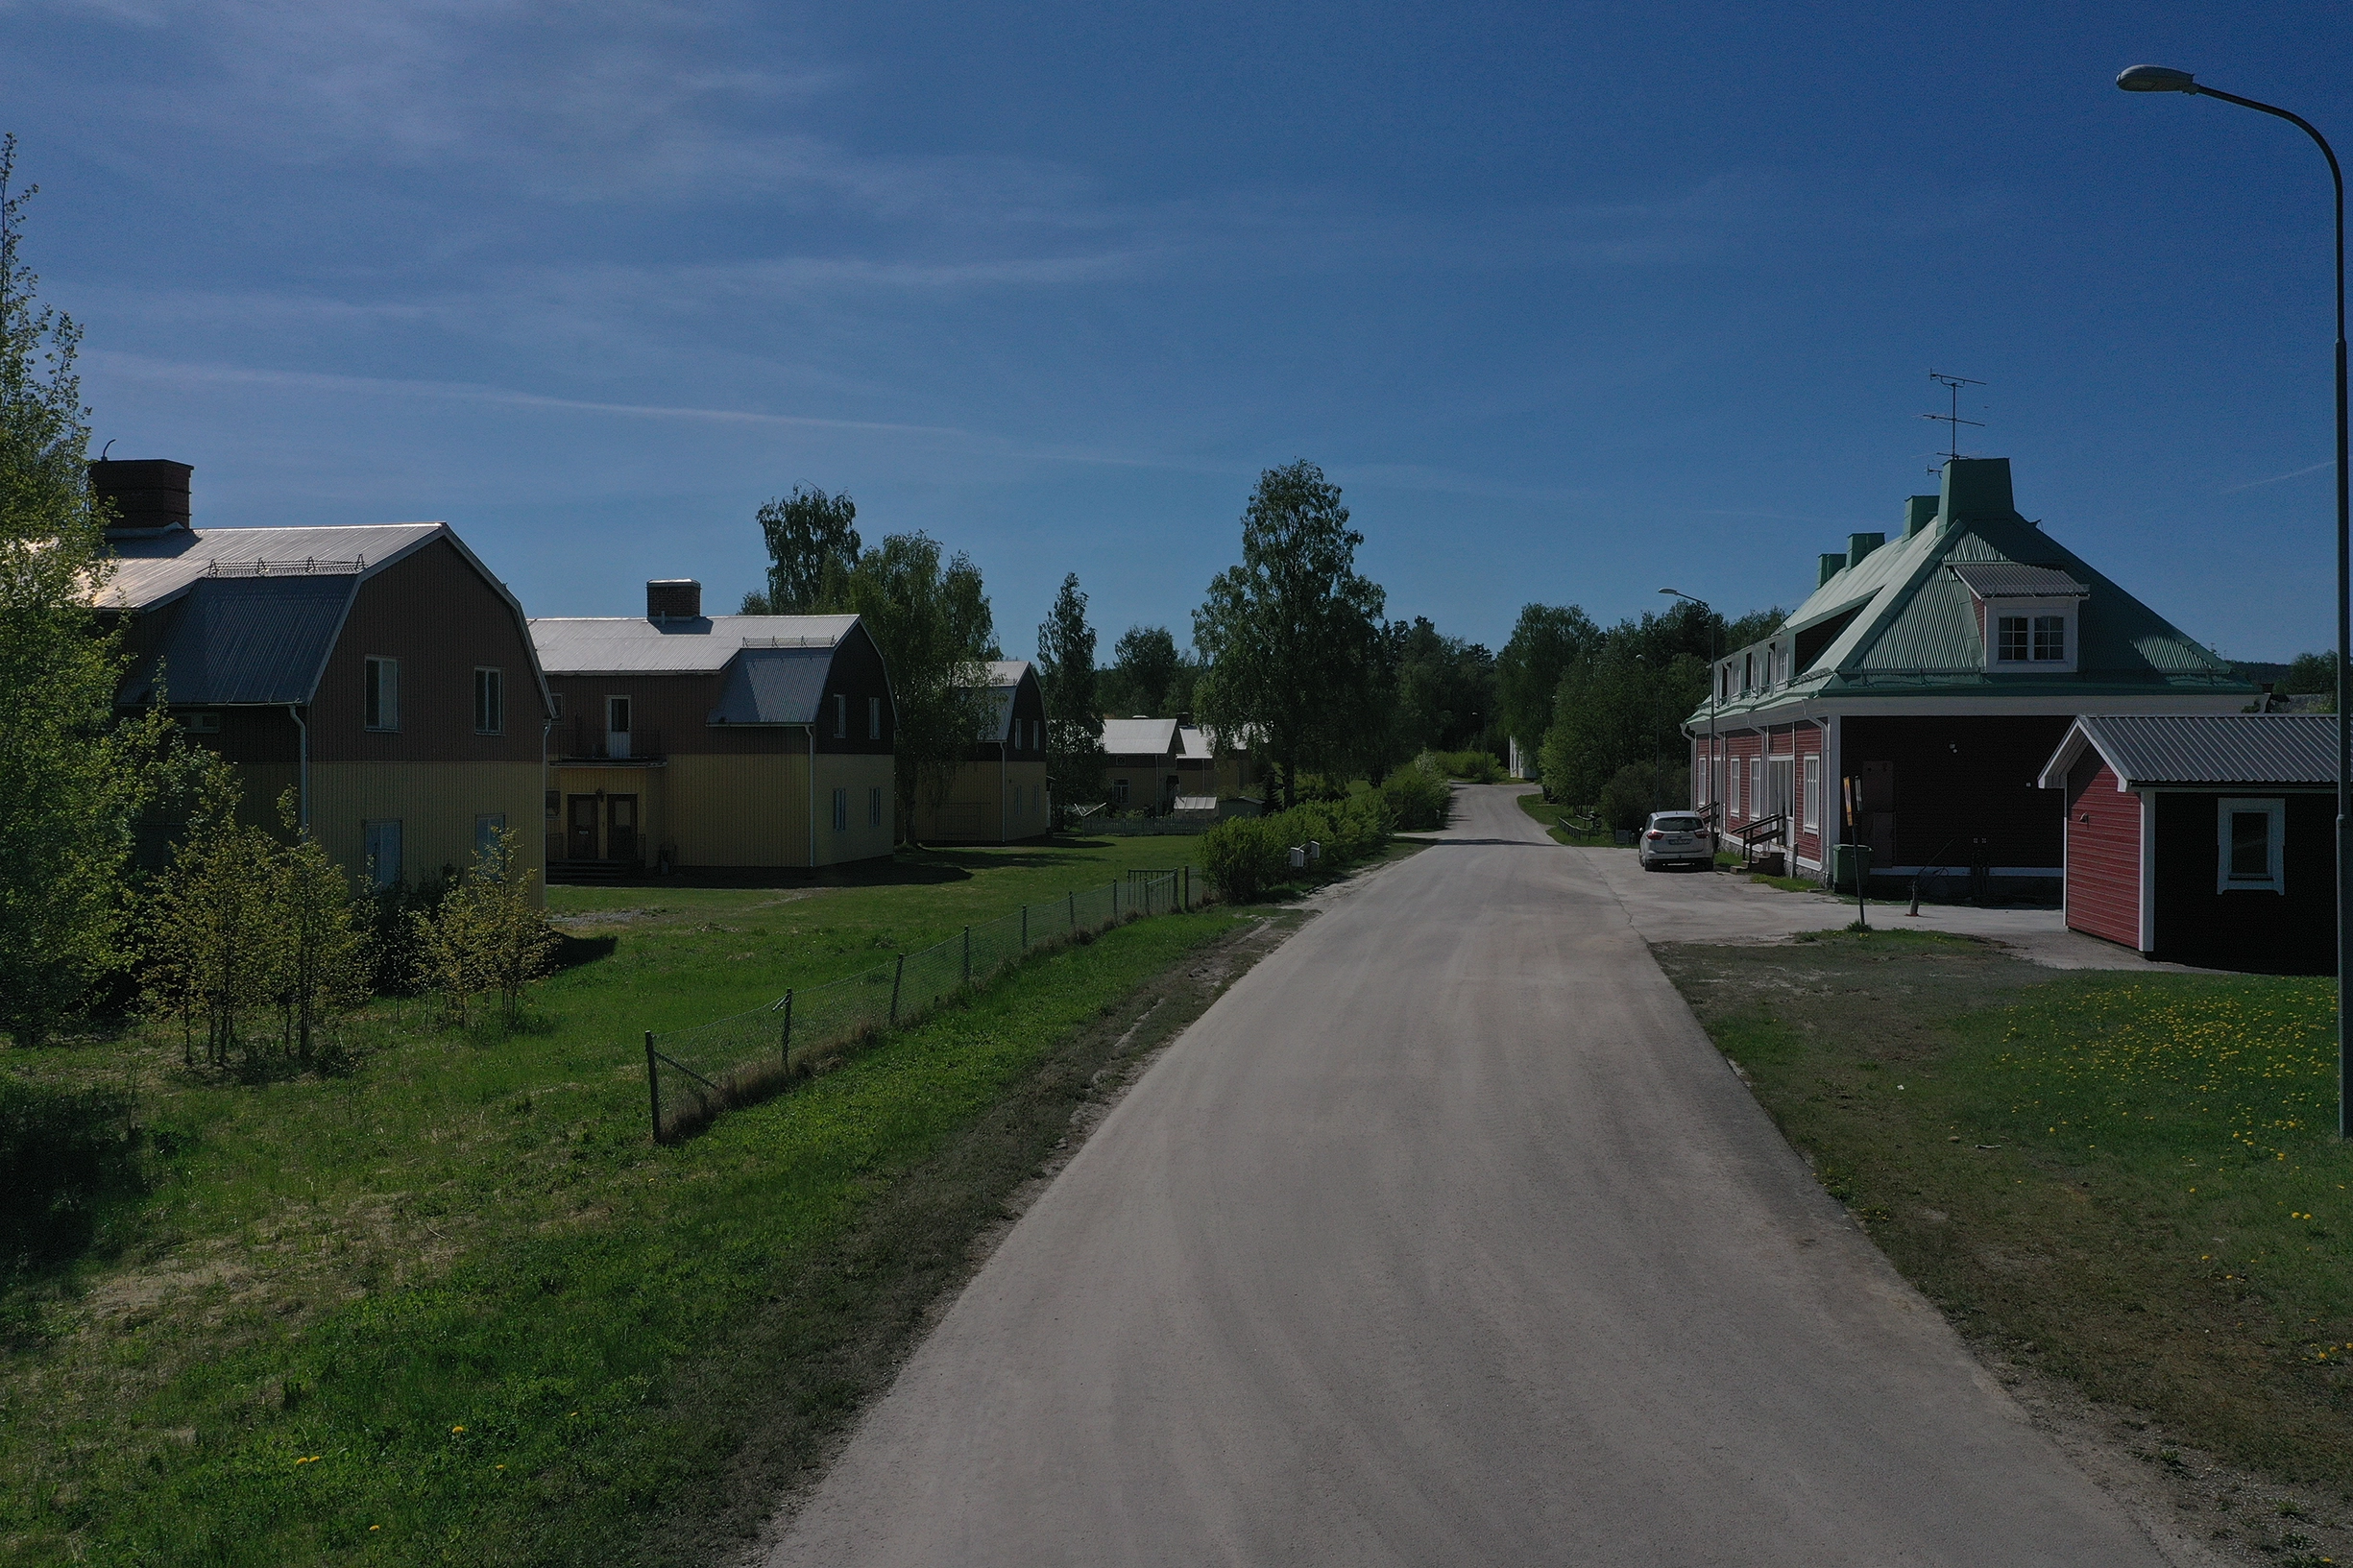 En grusväg. På höger sida är ett rött hus med vita knutar. På andra sidan vägen står tre stycken likadana gula och bruna villor.